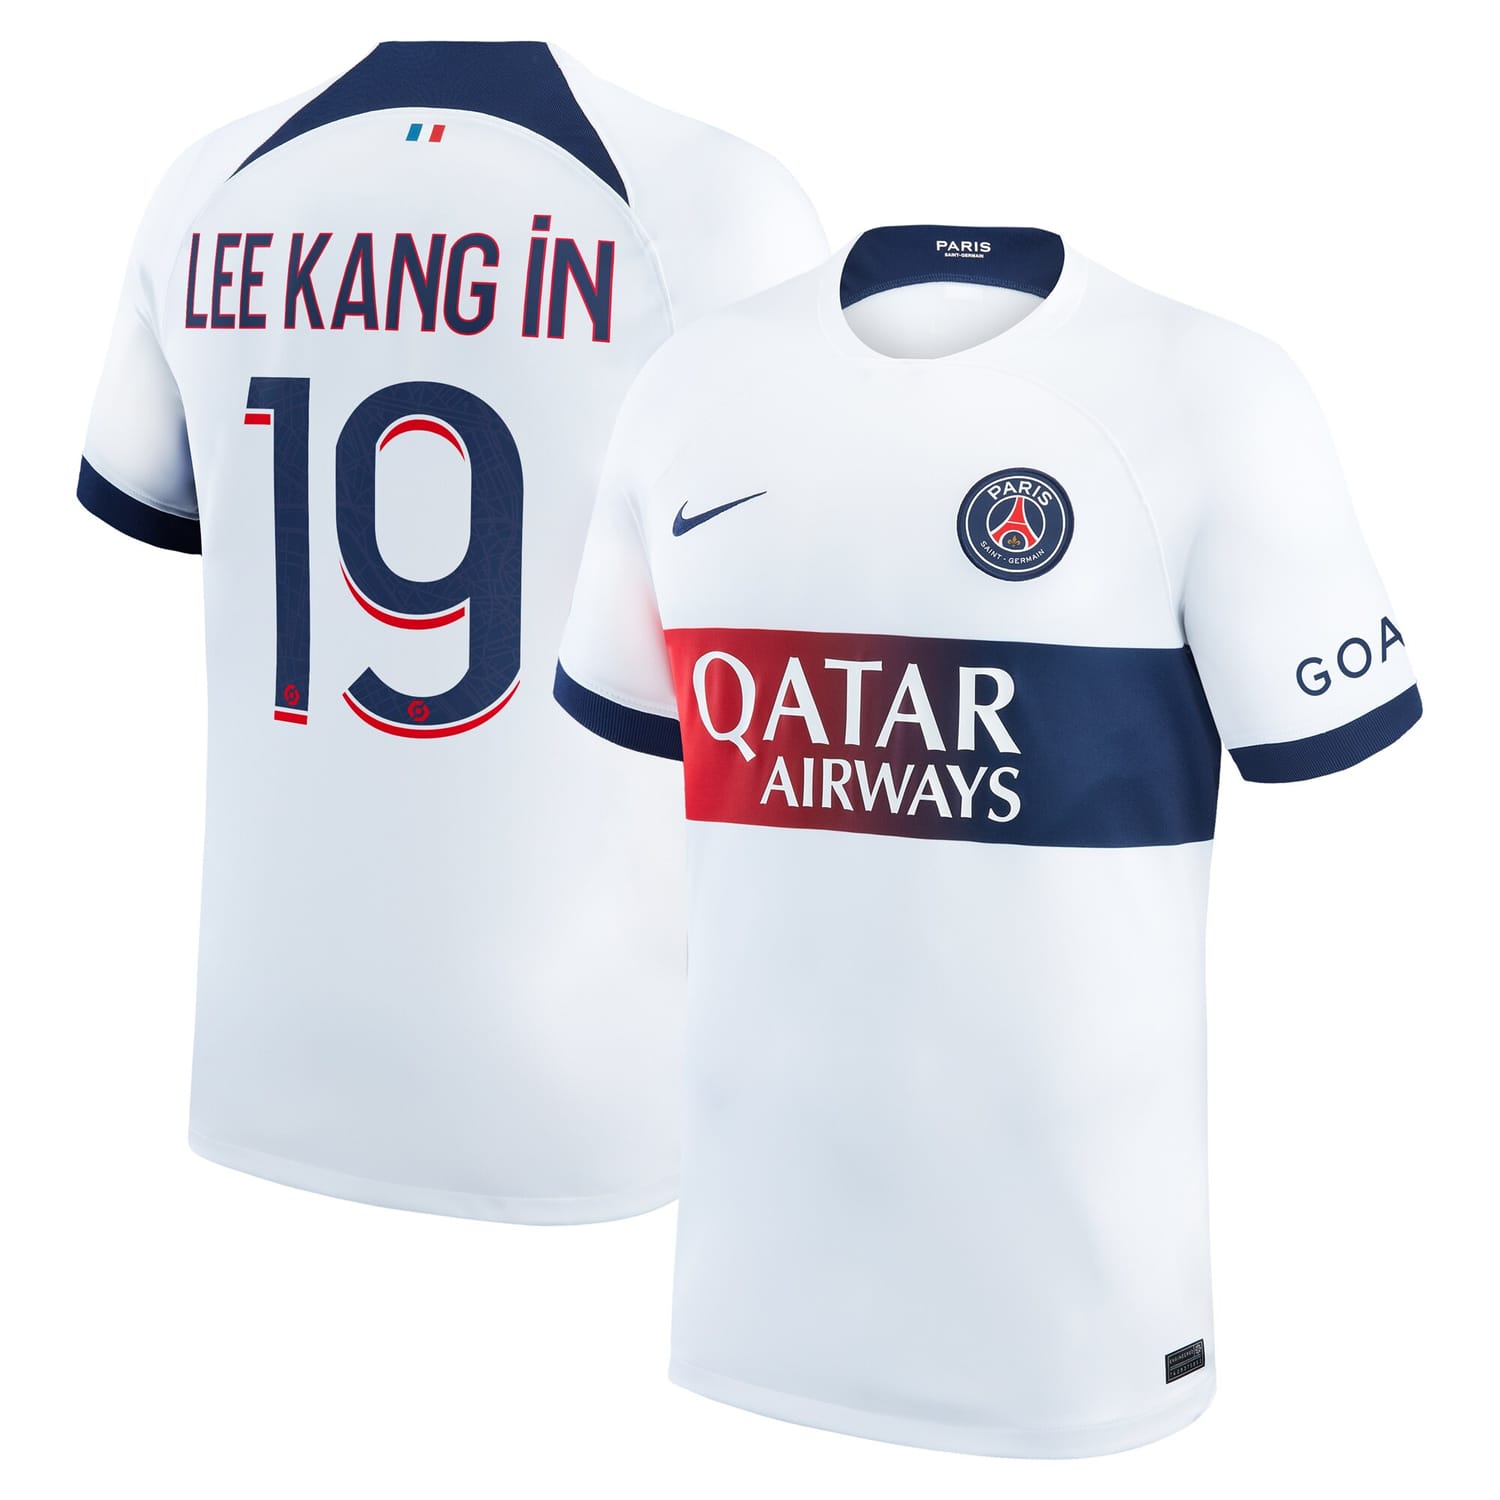 Ligue 1 Paris Saint-Germain Away Jersey Shirt 2023-24 player Lee Kang In 19 printing for Men